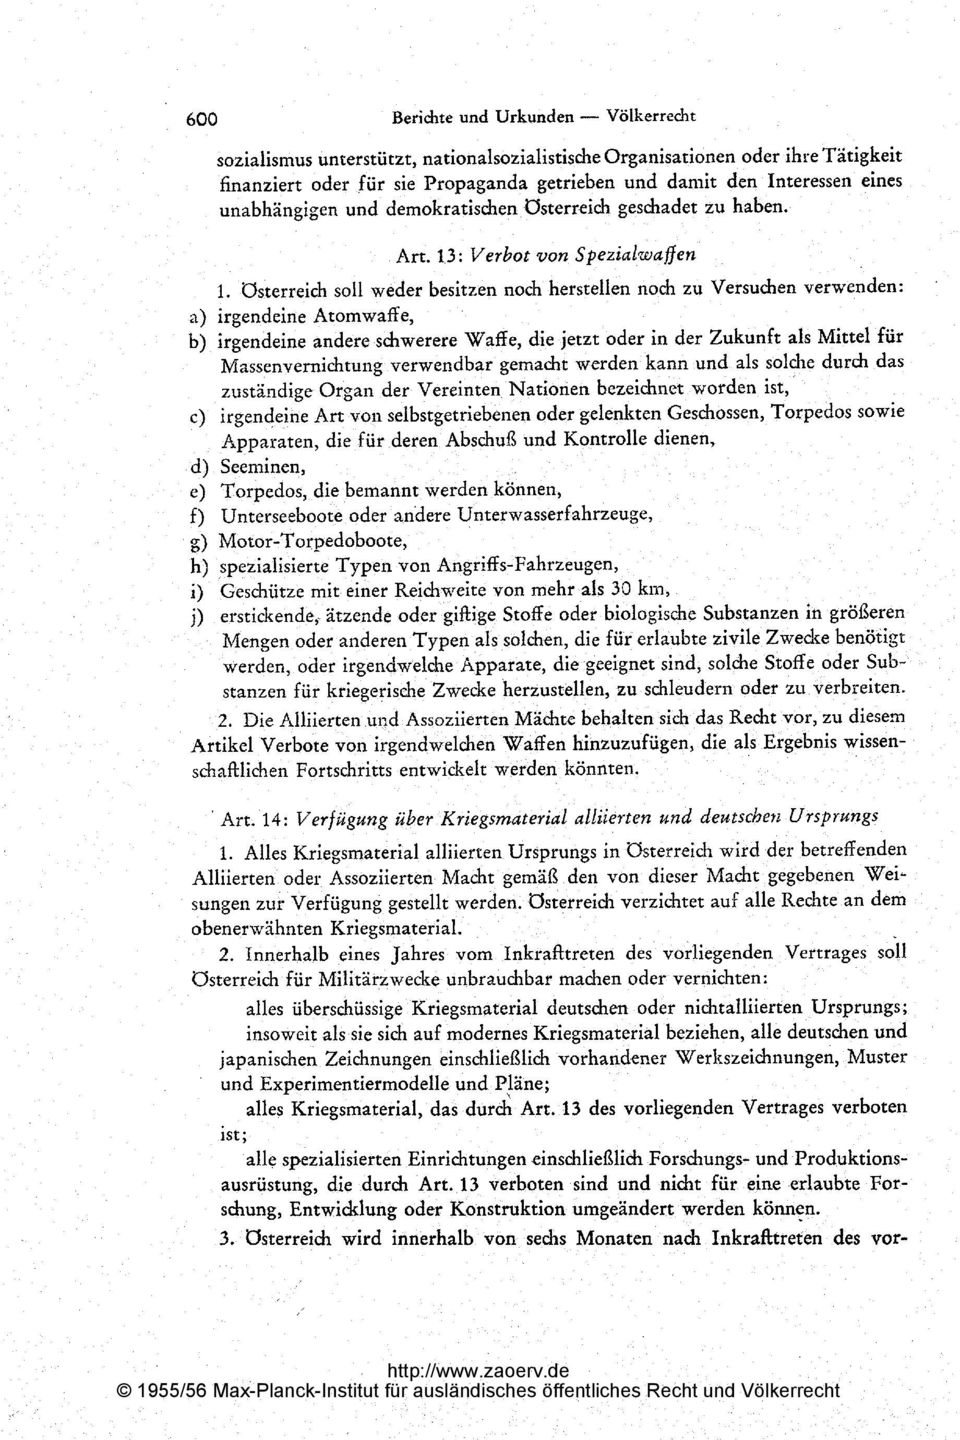 demokratischen Österreich geschadet zu haben. Art. 13: Verbot von Spezialwaffen 1.